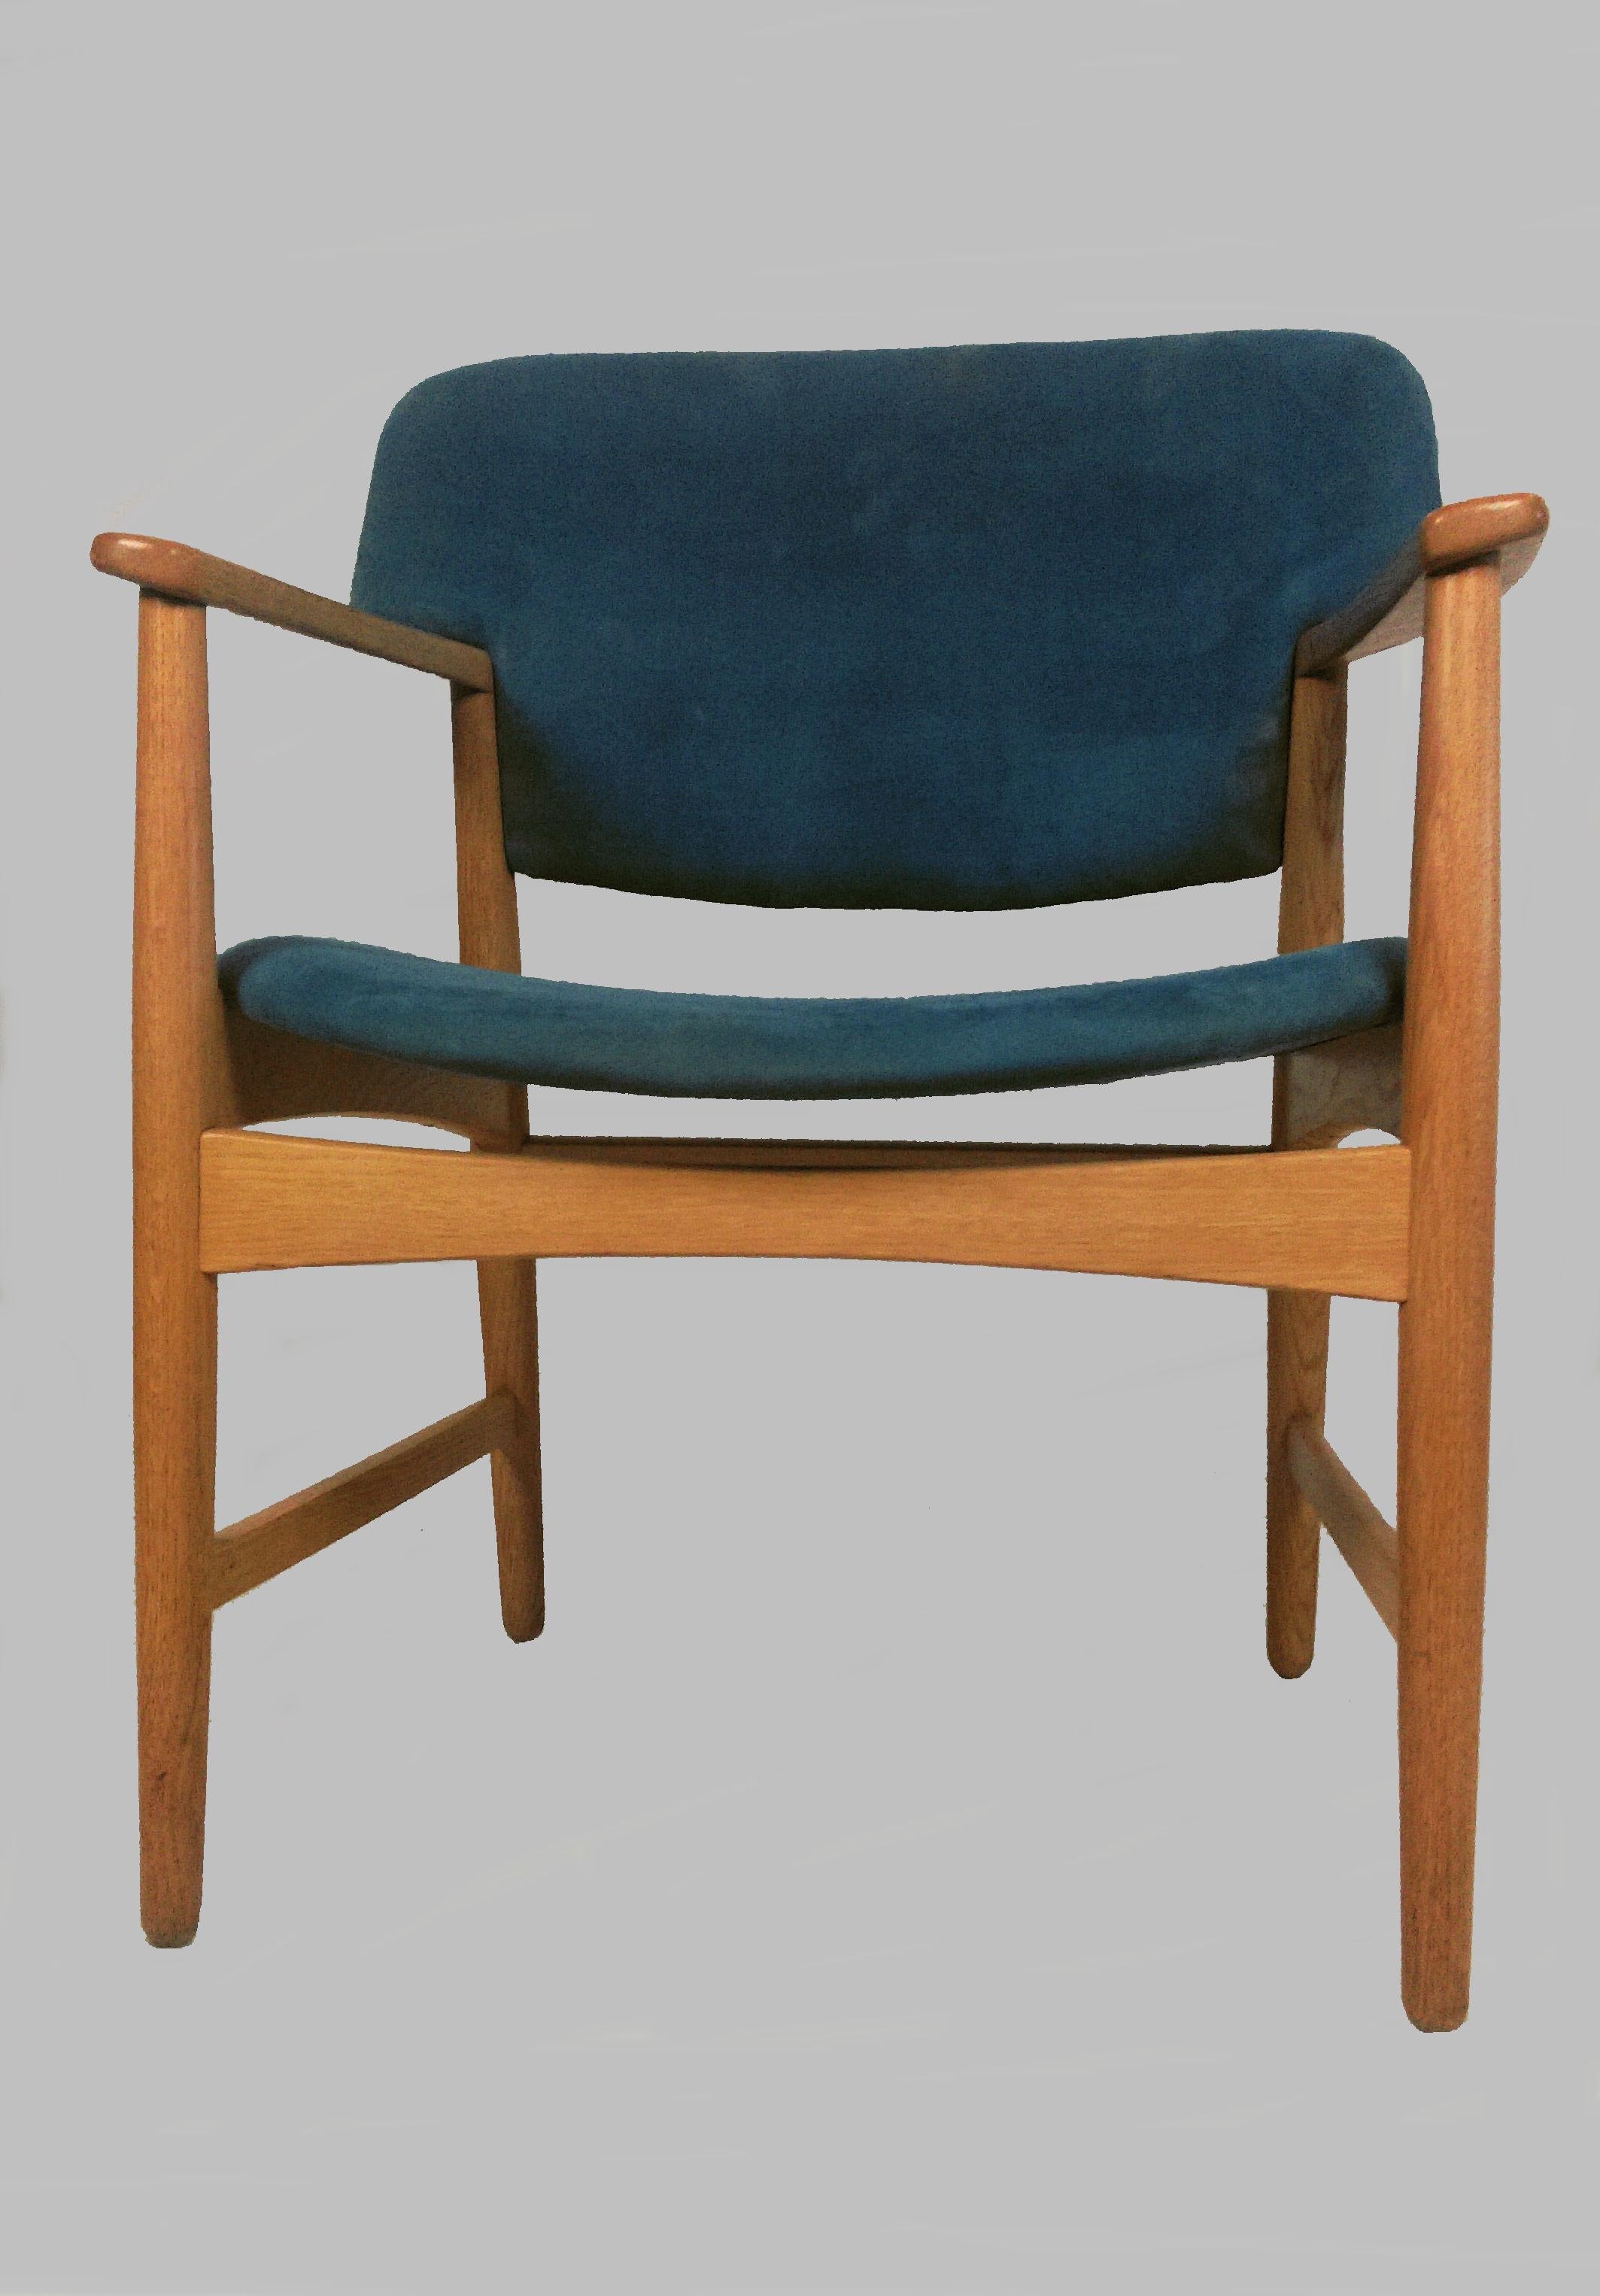 Fauteuil / chaise de bureau en chêne conçu par Ejner Larsen et Axel Bender Madsen en 1955 pour Fritz Hansen.

Les chaises confortables, bien conçues et presque intemporelles ont été vérifiées et refinies par notre ébéniste pour s'assurer qu'elles